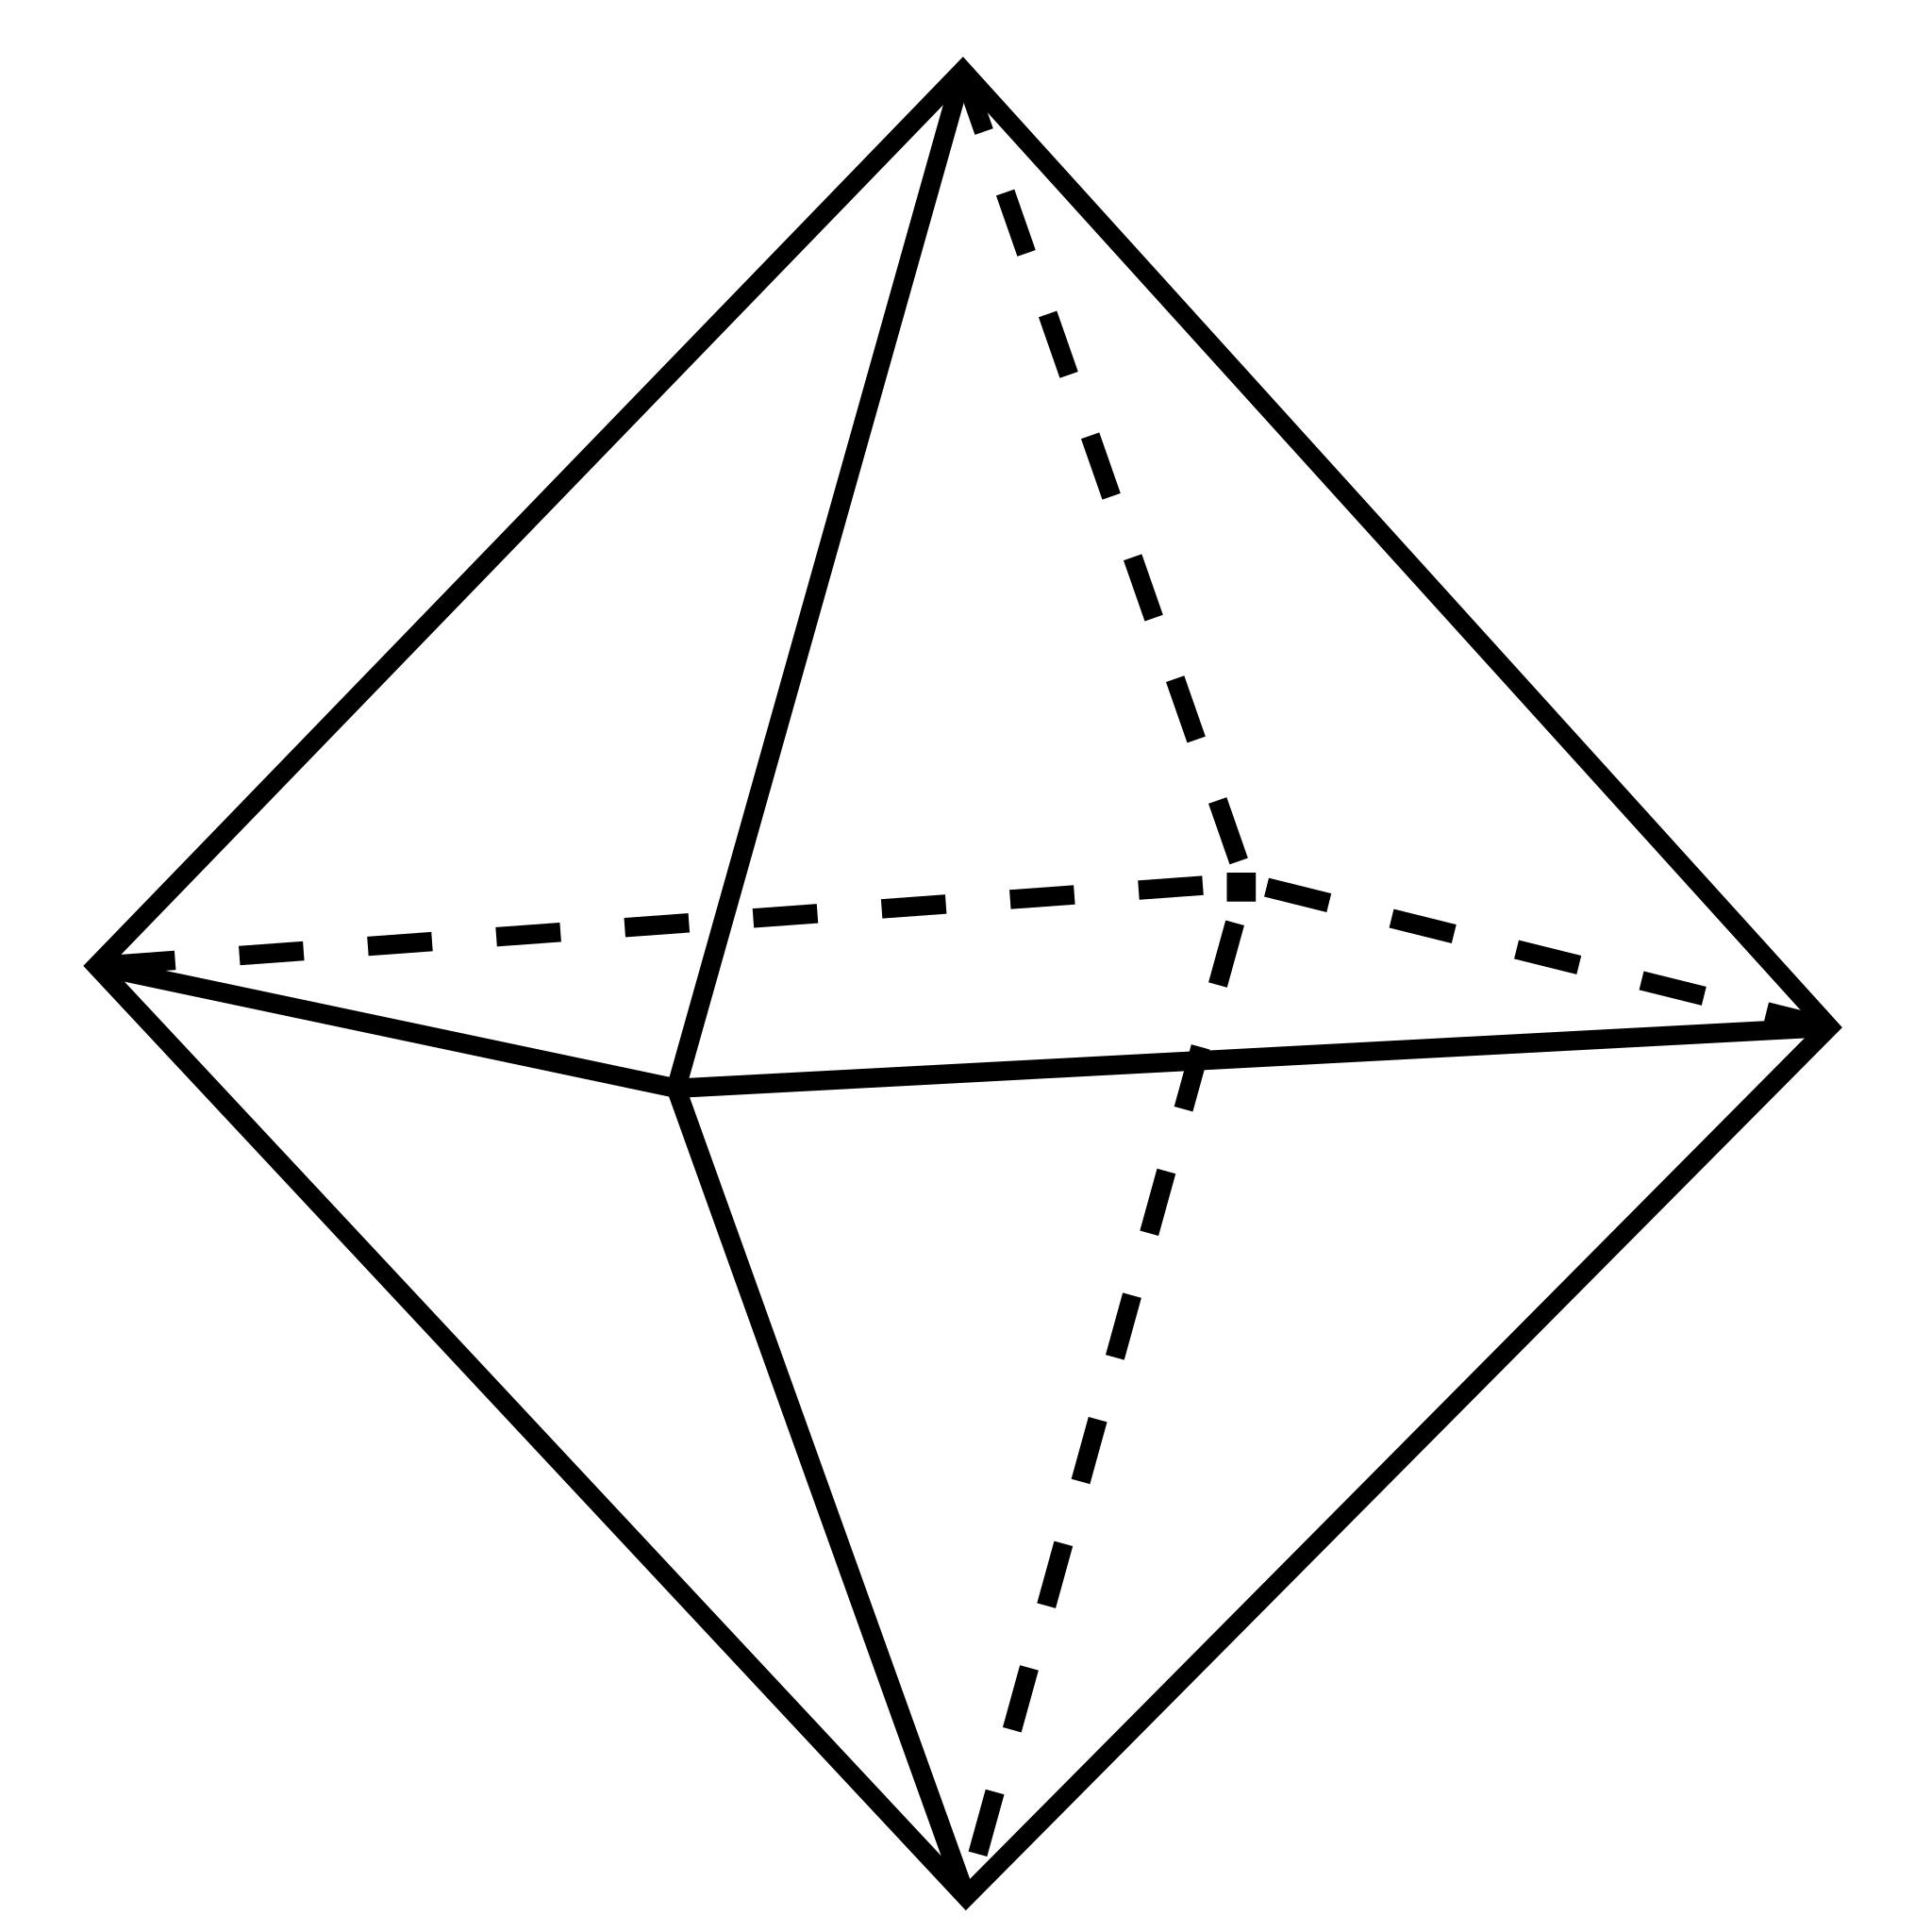 Тригональная пирамида и тетраэдр